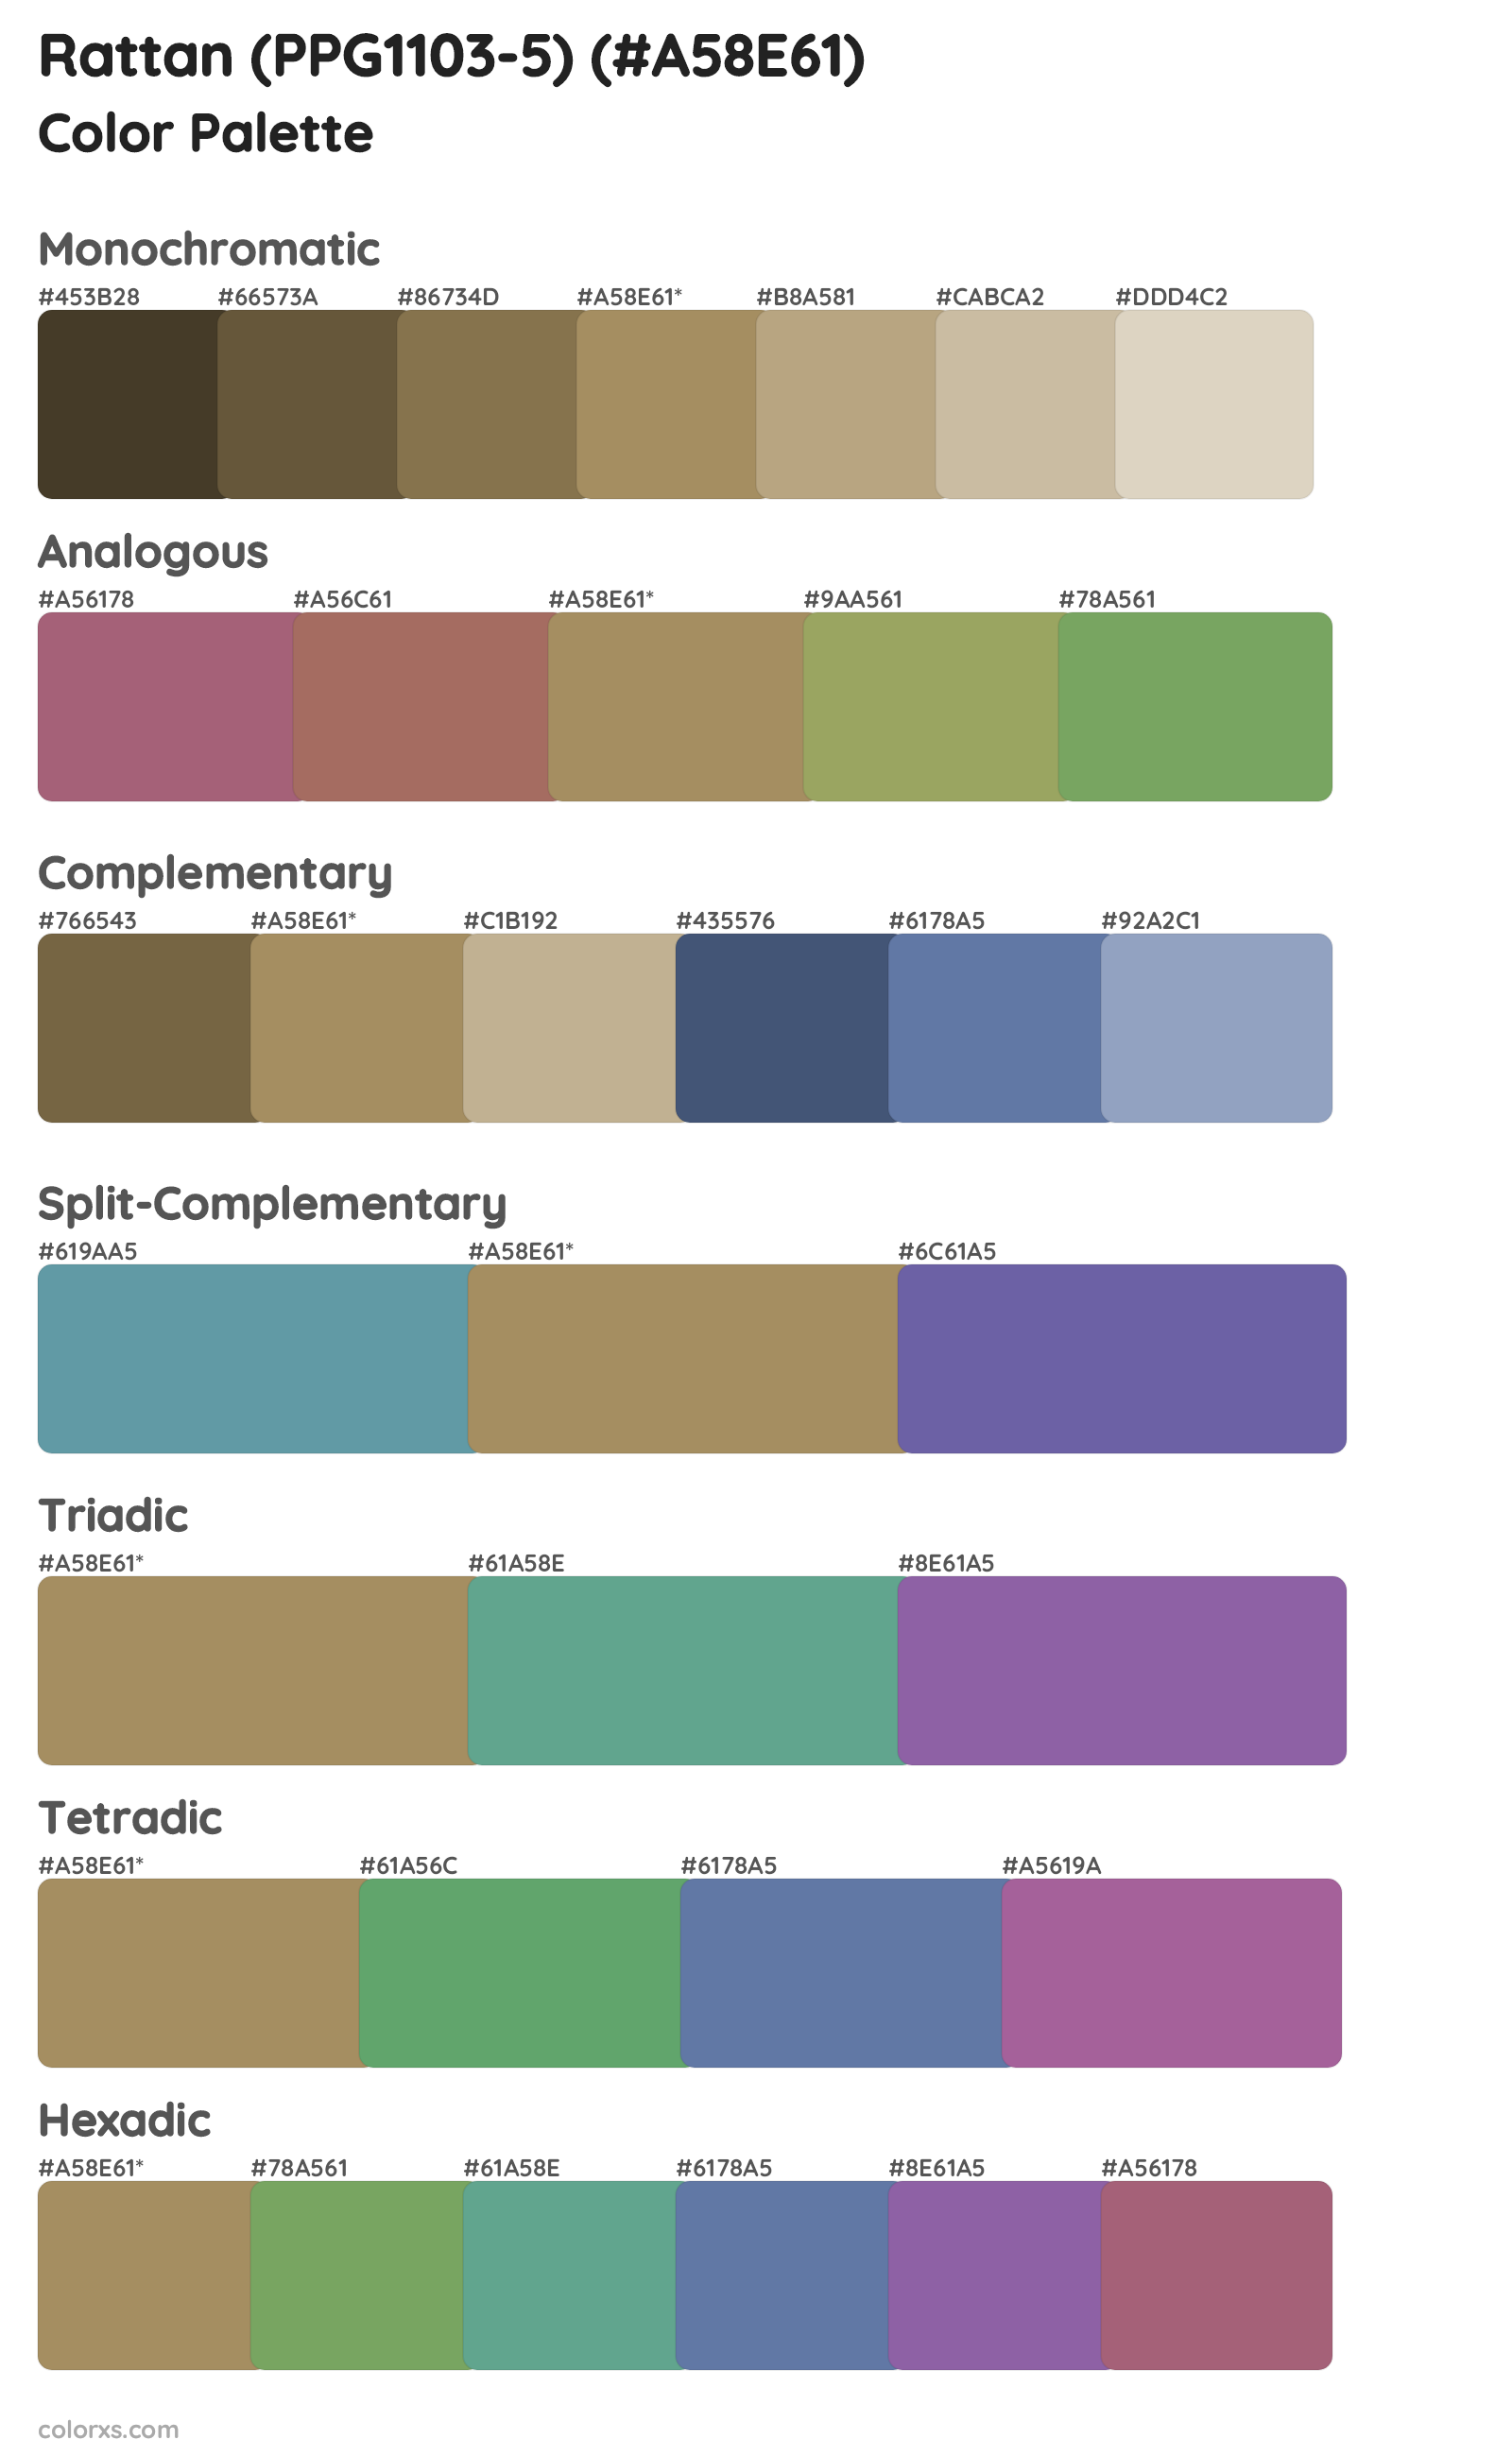 Rattan (PPG1103-5) Color Scheme Palettes